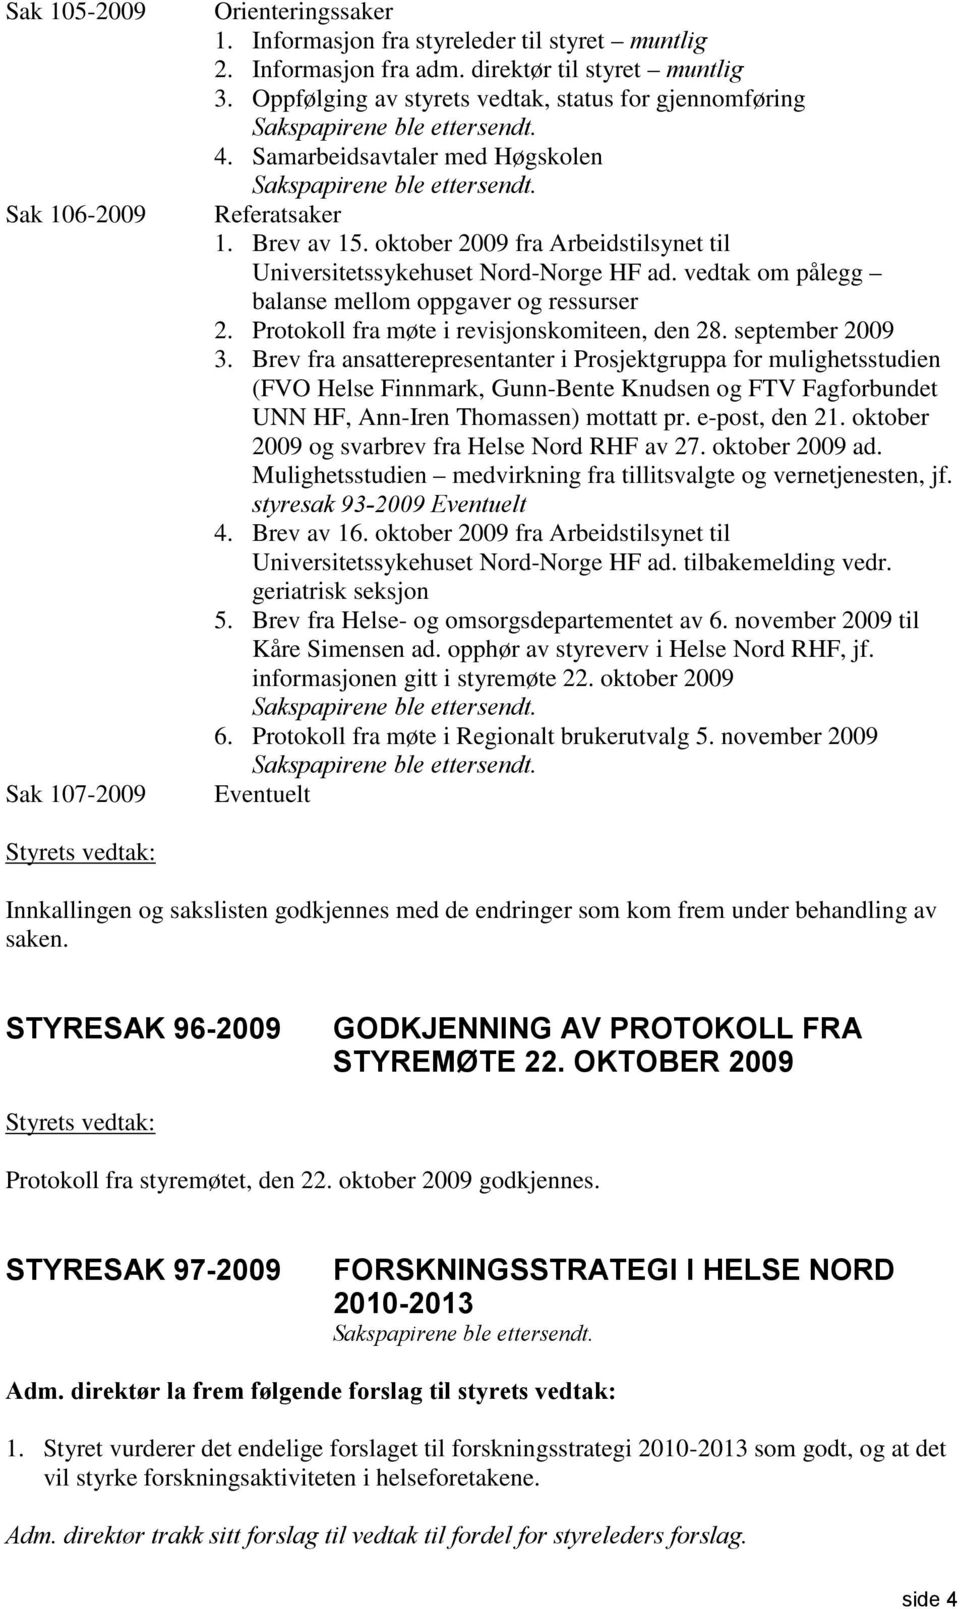 oktober 2009 fra Arbeidstilsynet til Universitetssykehuset Nord-Norge HF ad. vedtak om pålegg balanse mellom oppgaver og ressurser 2. Protokoll fra møte i revisjonskomiteen, den 28. september 2009 3.